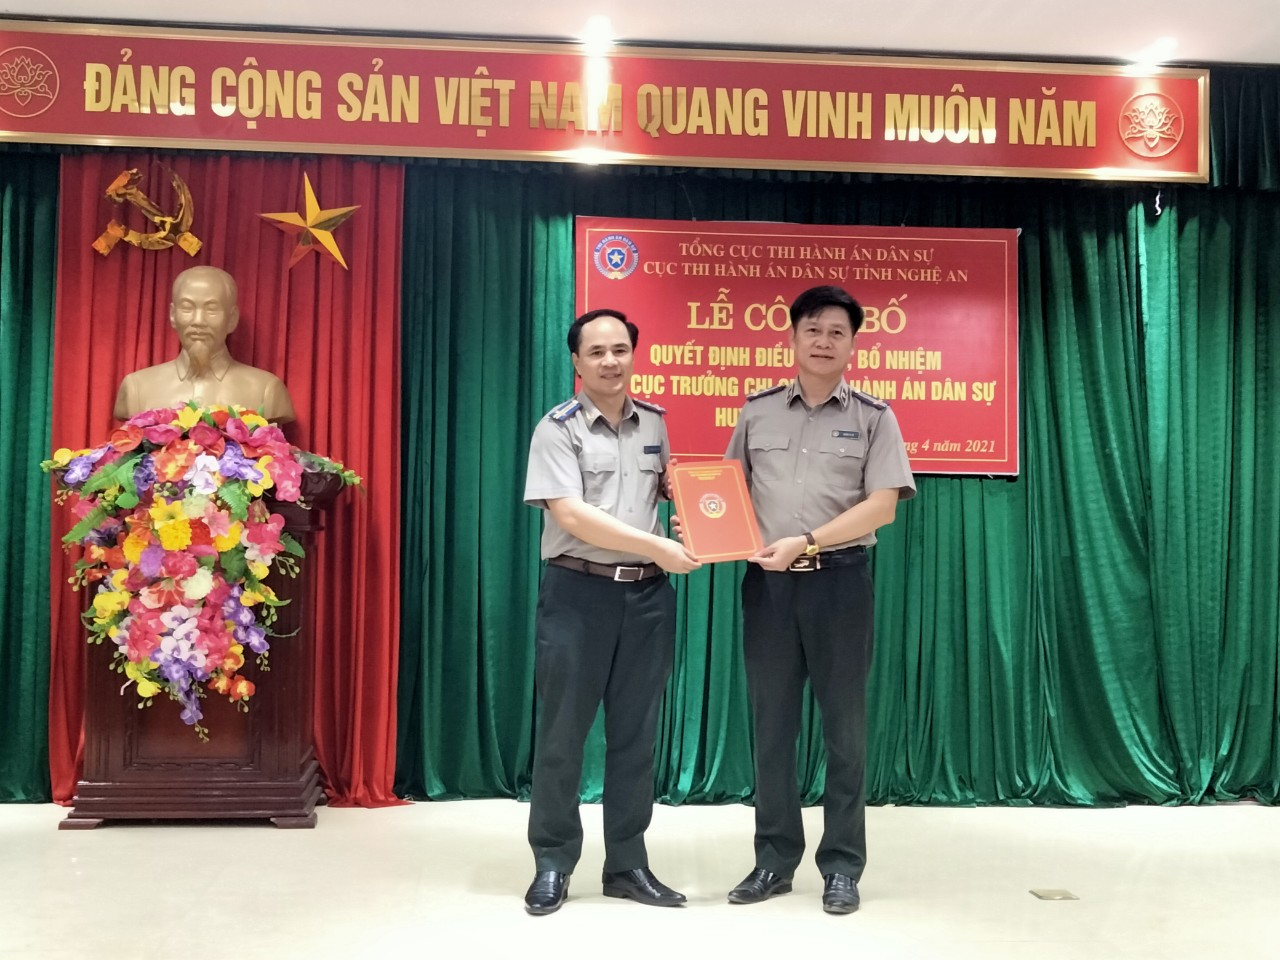 Cục Thi hành án dân sự tỉnh Nghệ An tổ chức công bố quyết định điều động, bổ nhiệm đồng chí Quán Vi Hà An giữ chức vụ Chi cục trưởng Chi Cục Thi hành án dân sự tỉnh Con Cuông